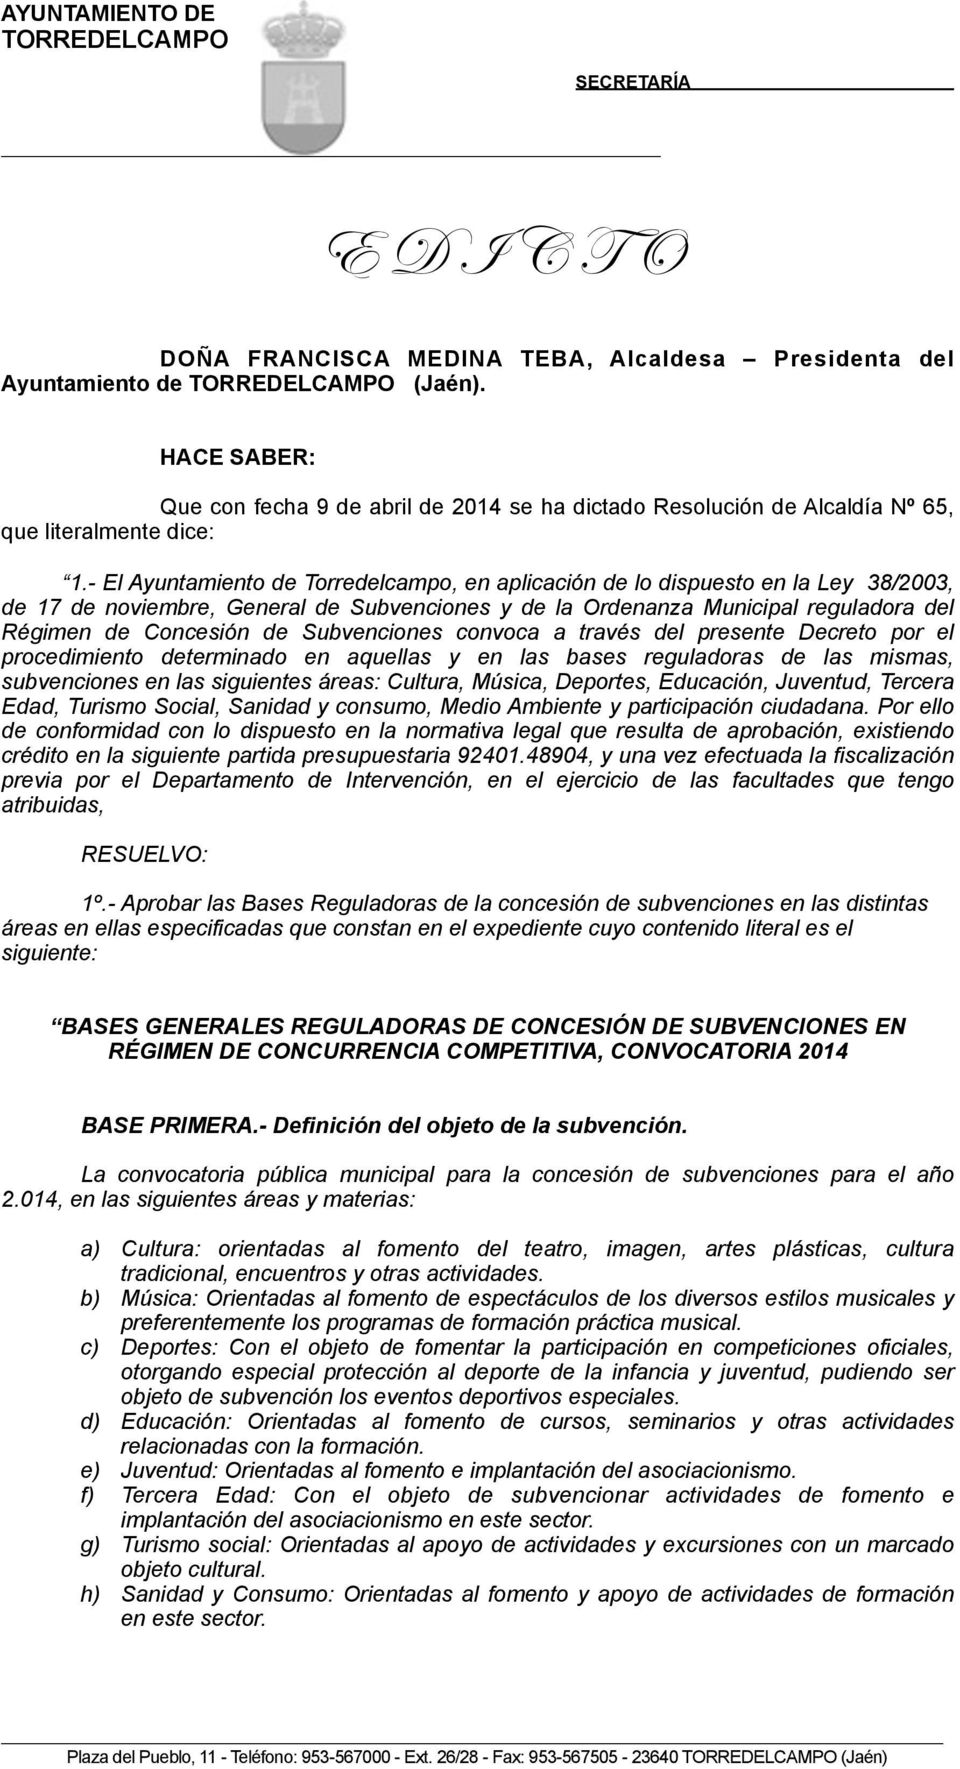 - El Ayuntamiento de Torredelcampo, en aplicación de lo dispuesto en la Ley 38/2003, de 17 de noviembre, General de Subvenciones y de la Ordenanza Municipal reguladora del Régimen de Concesión de